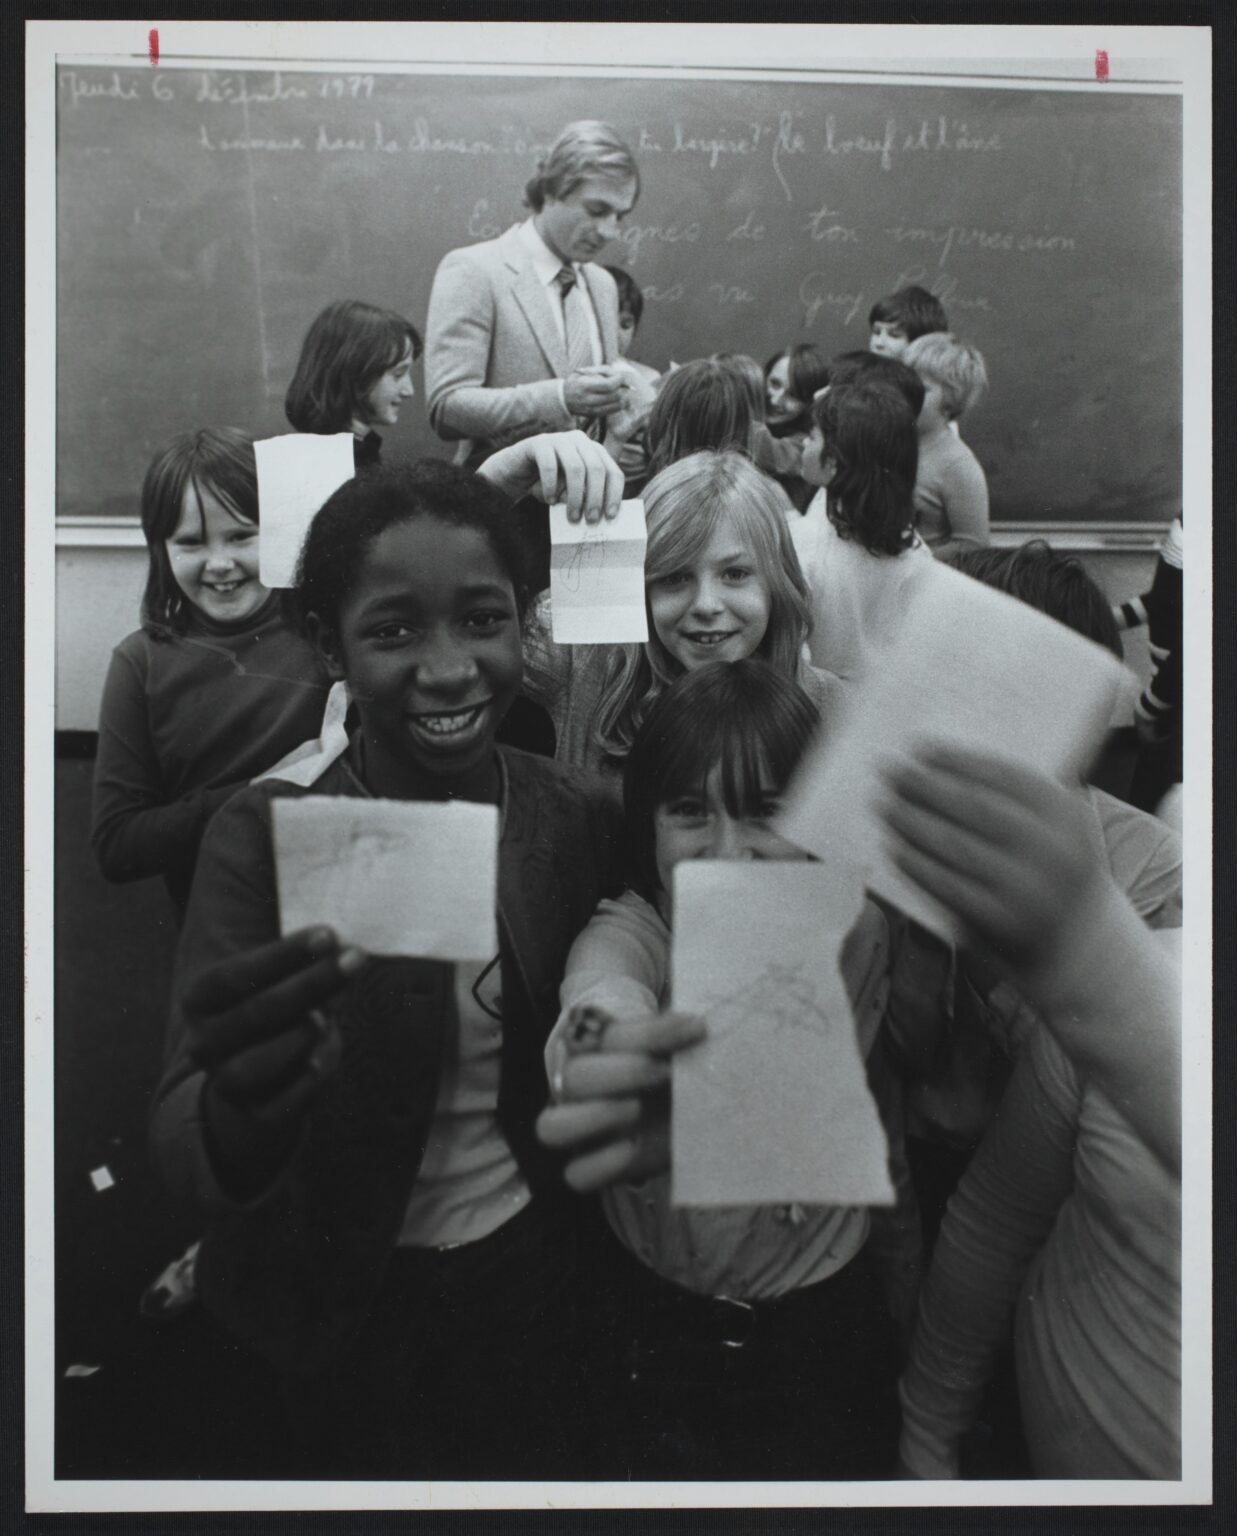 Le 6 décembre 1979, Guy Lafleur signe des autographes pour les élèves enthousiastes de l’école Victor-Rousselot à Saint-Henri.